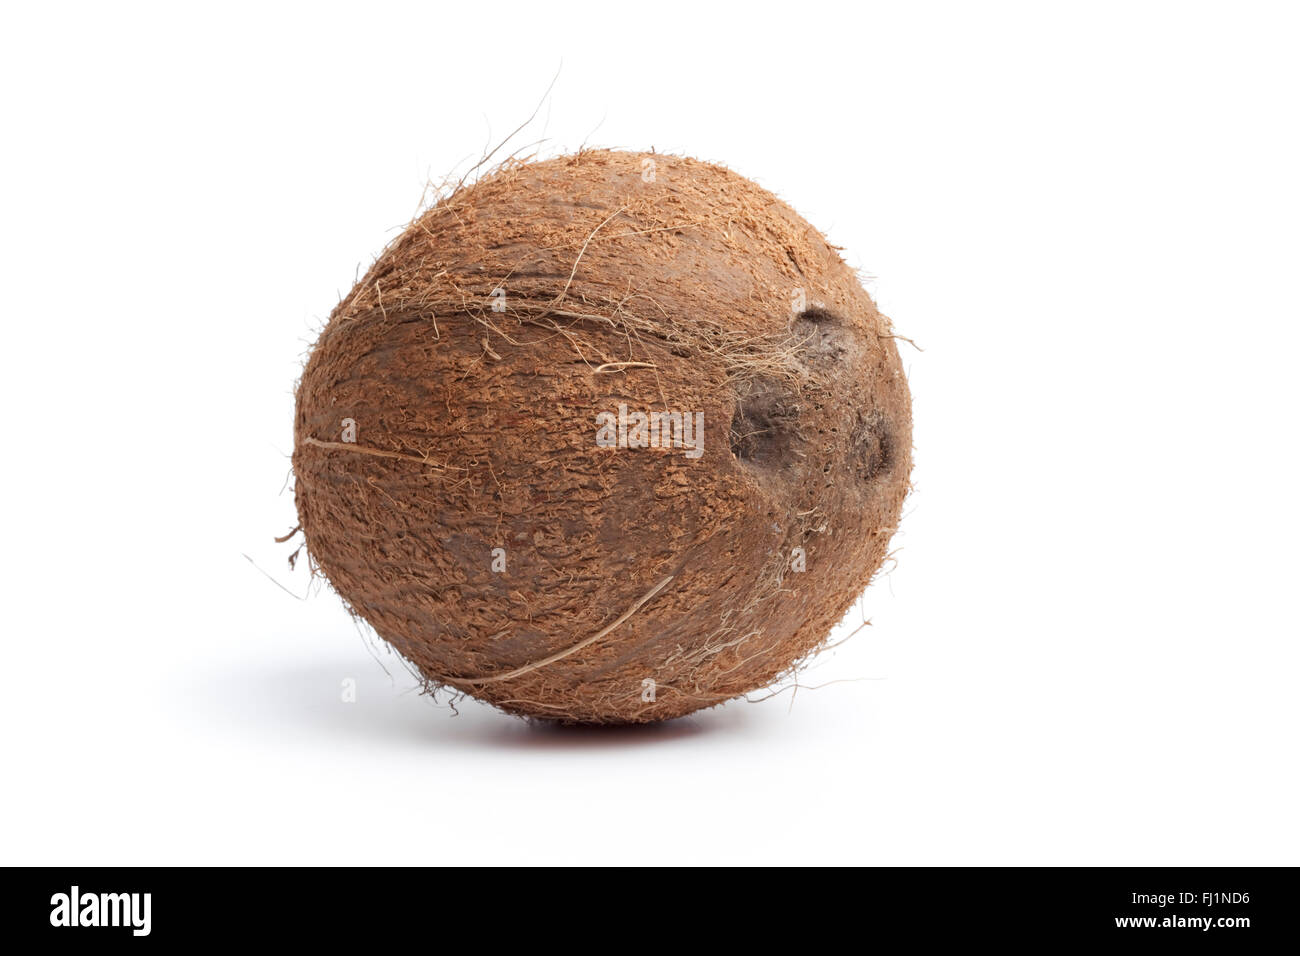 Whole single fresh coconut isolated on white background Stock Photo